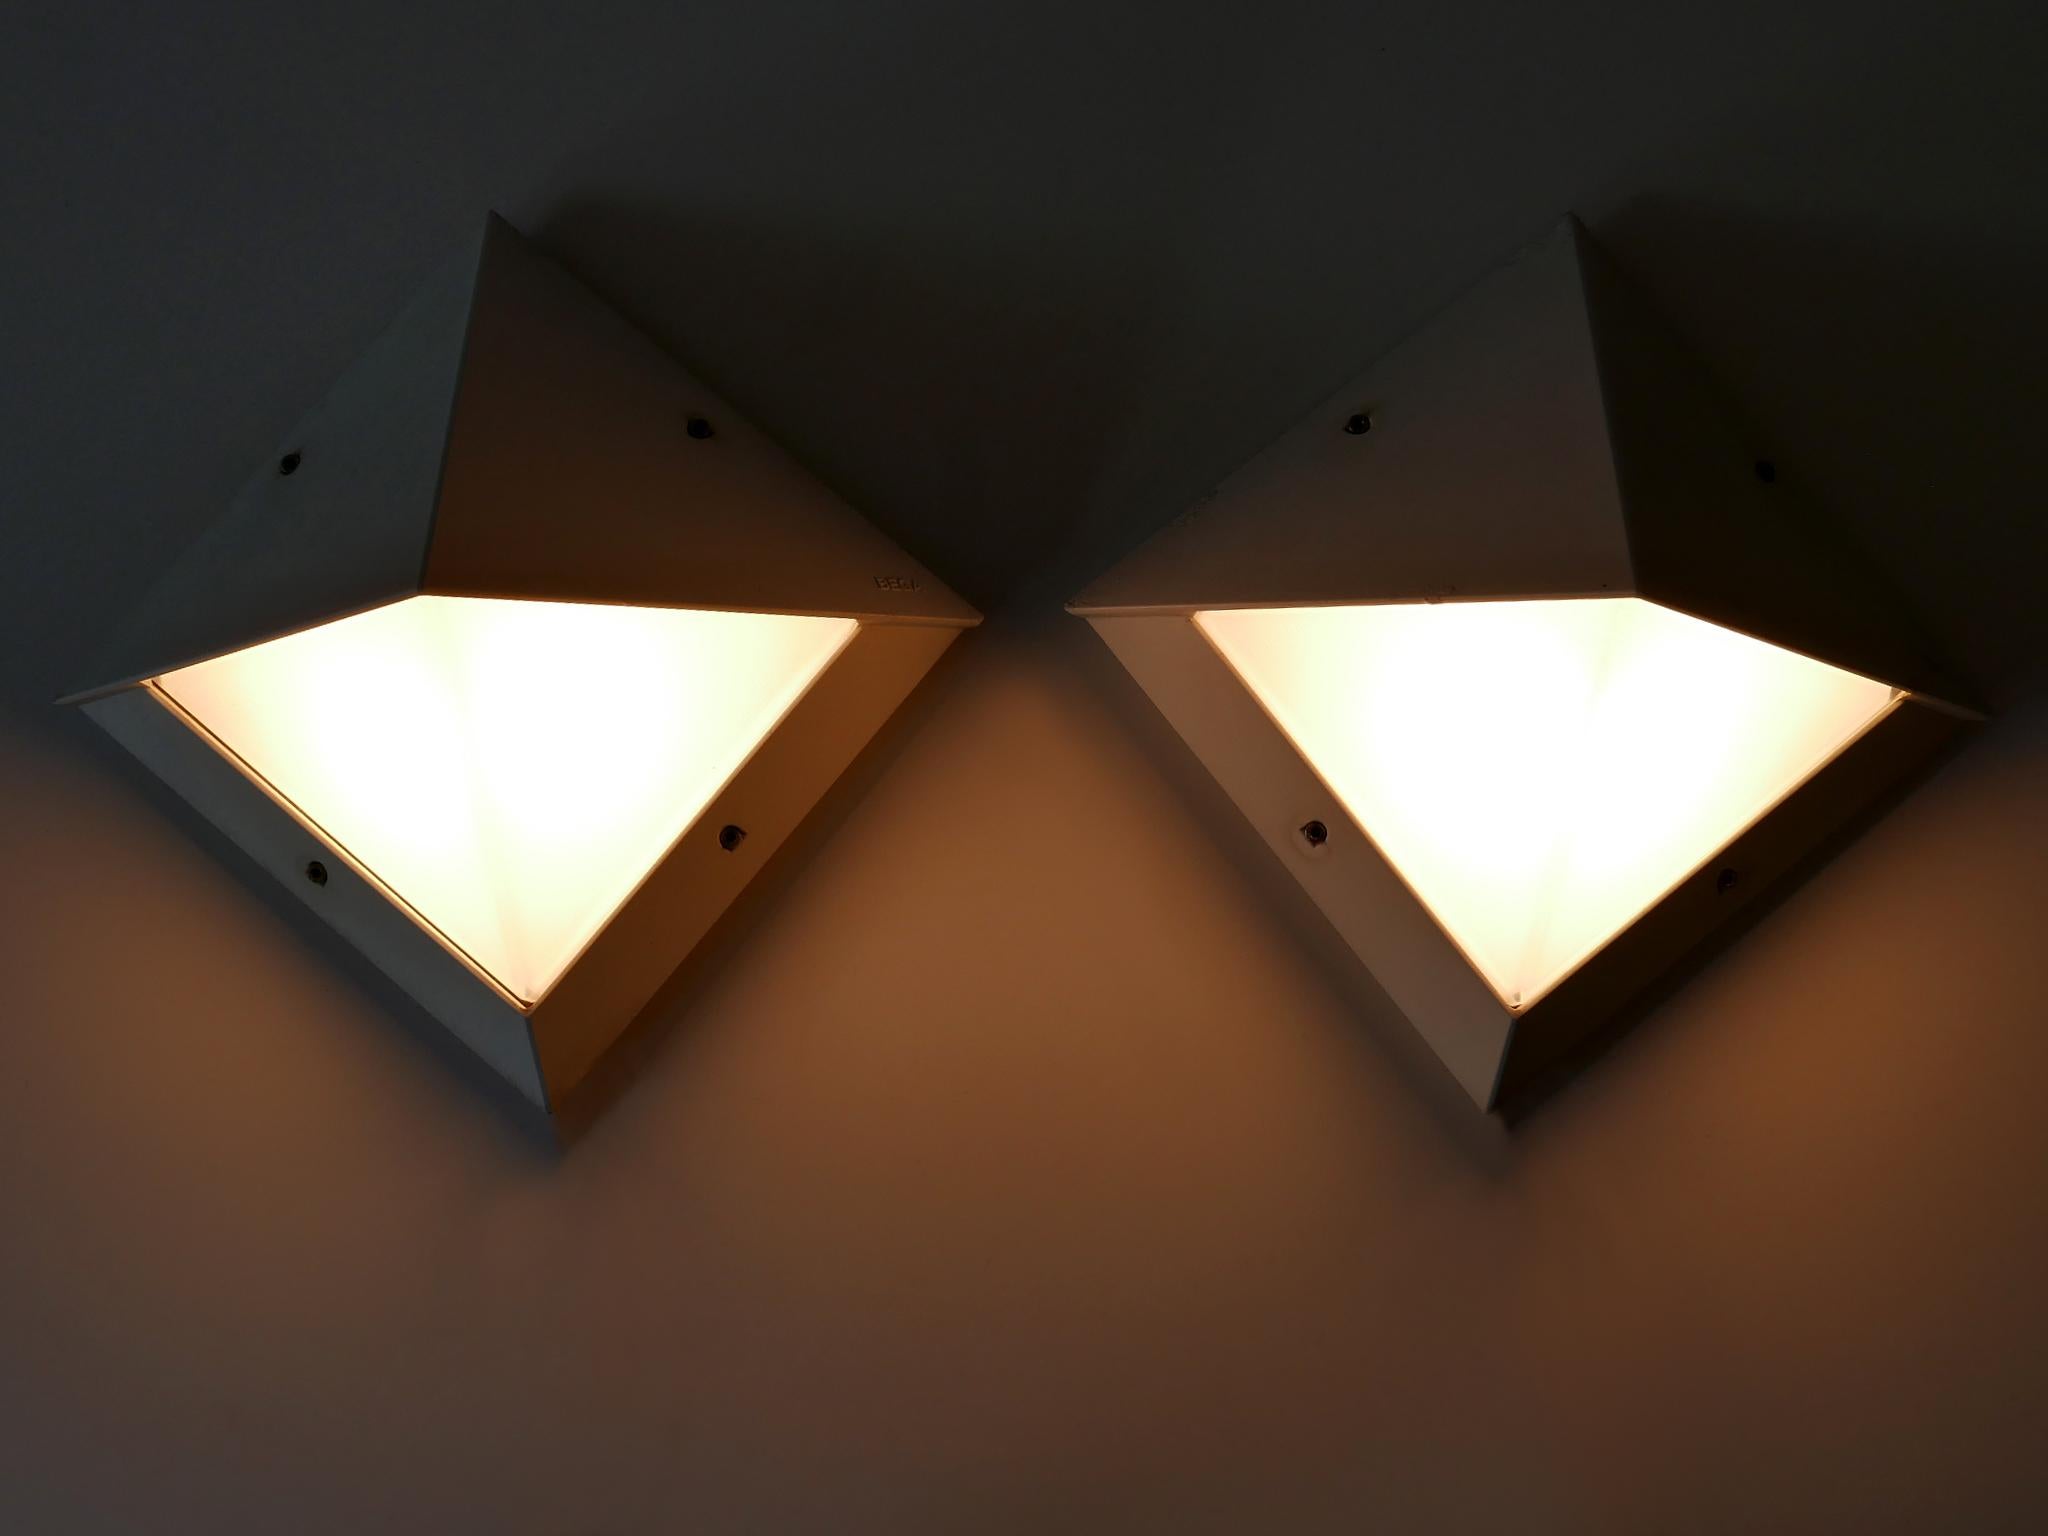 Set aus zwei eleganten modernistischen Wandlampen oder Wandleuchtern für den Außenbereich. Entworfen und hergestellt von BEGA, Deutschland, 1980er Jahre.

Jede Lampe ist aus weiß emailliertem Aluminiumguss und Glas gefertigt, benötigt 1 x E27 /